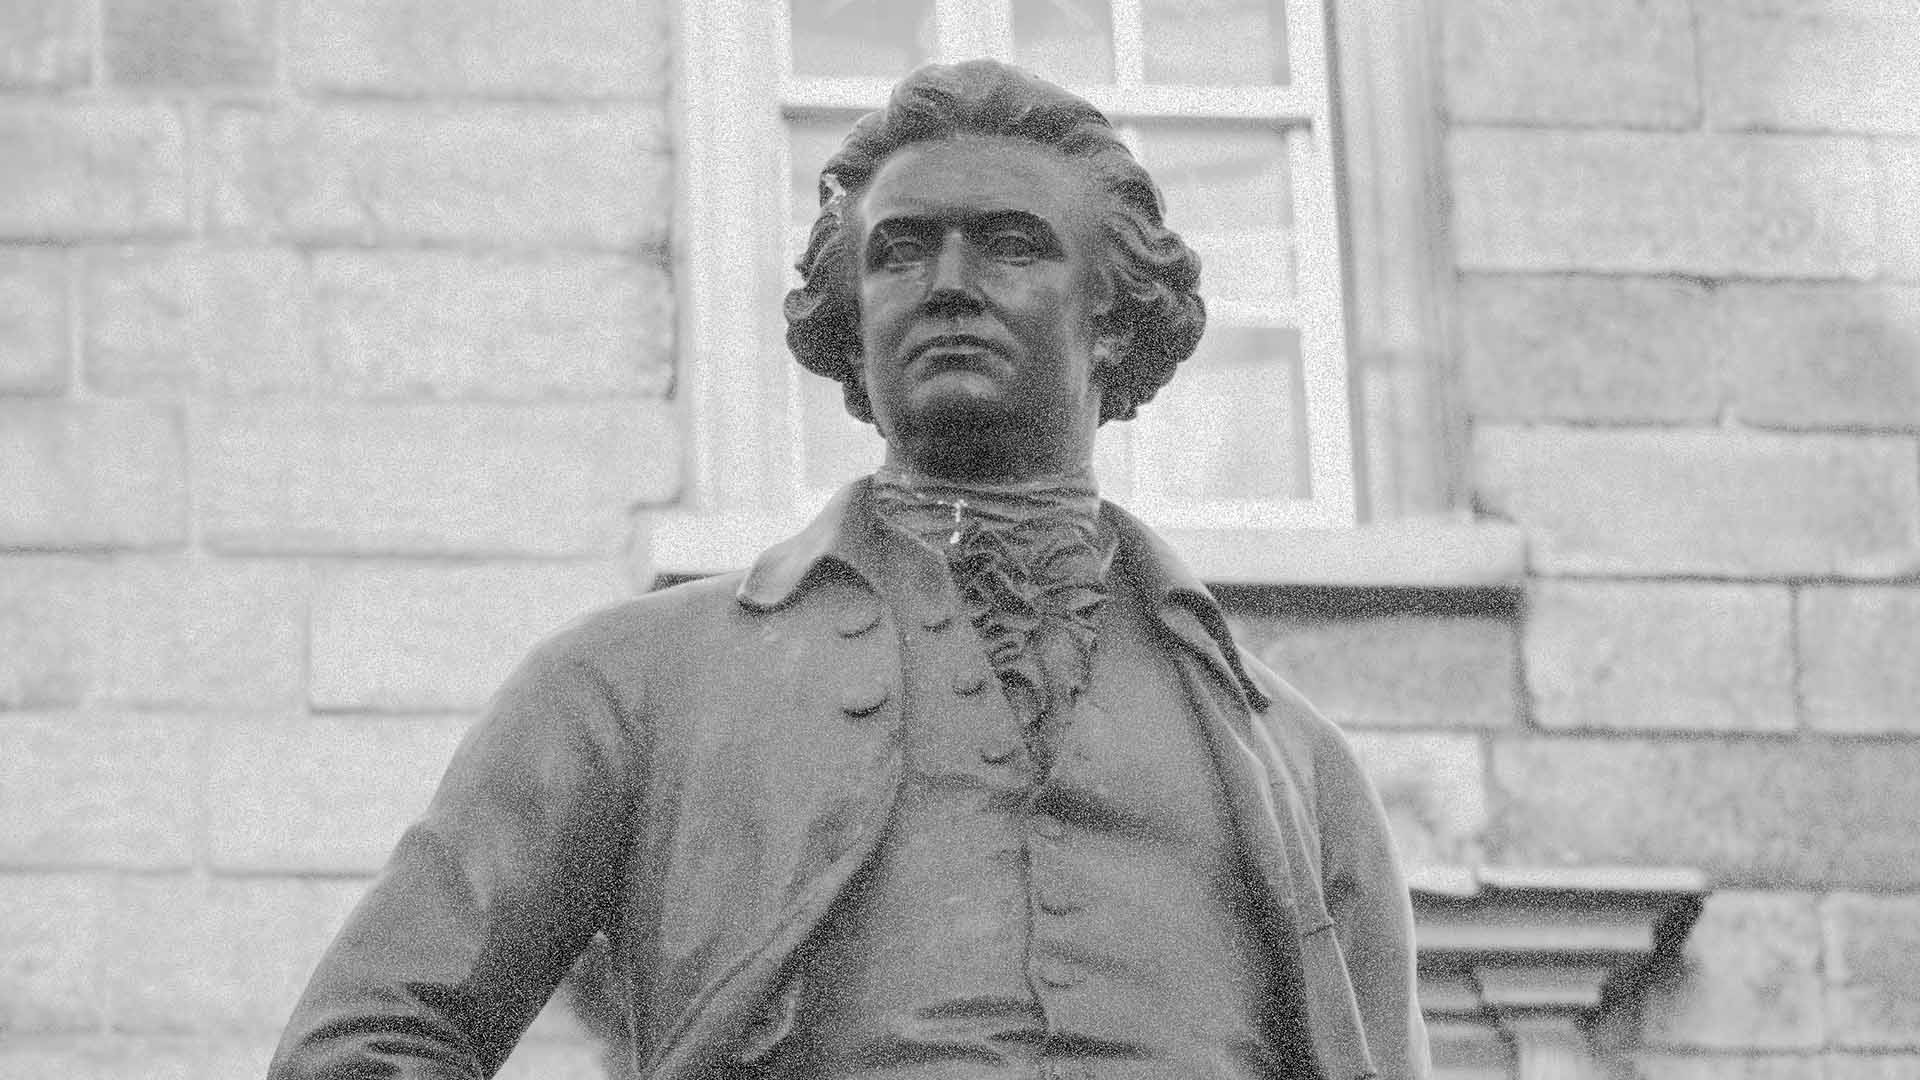 Edmund Burke Statue